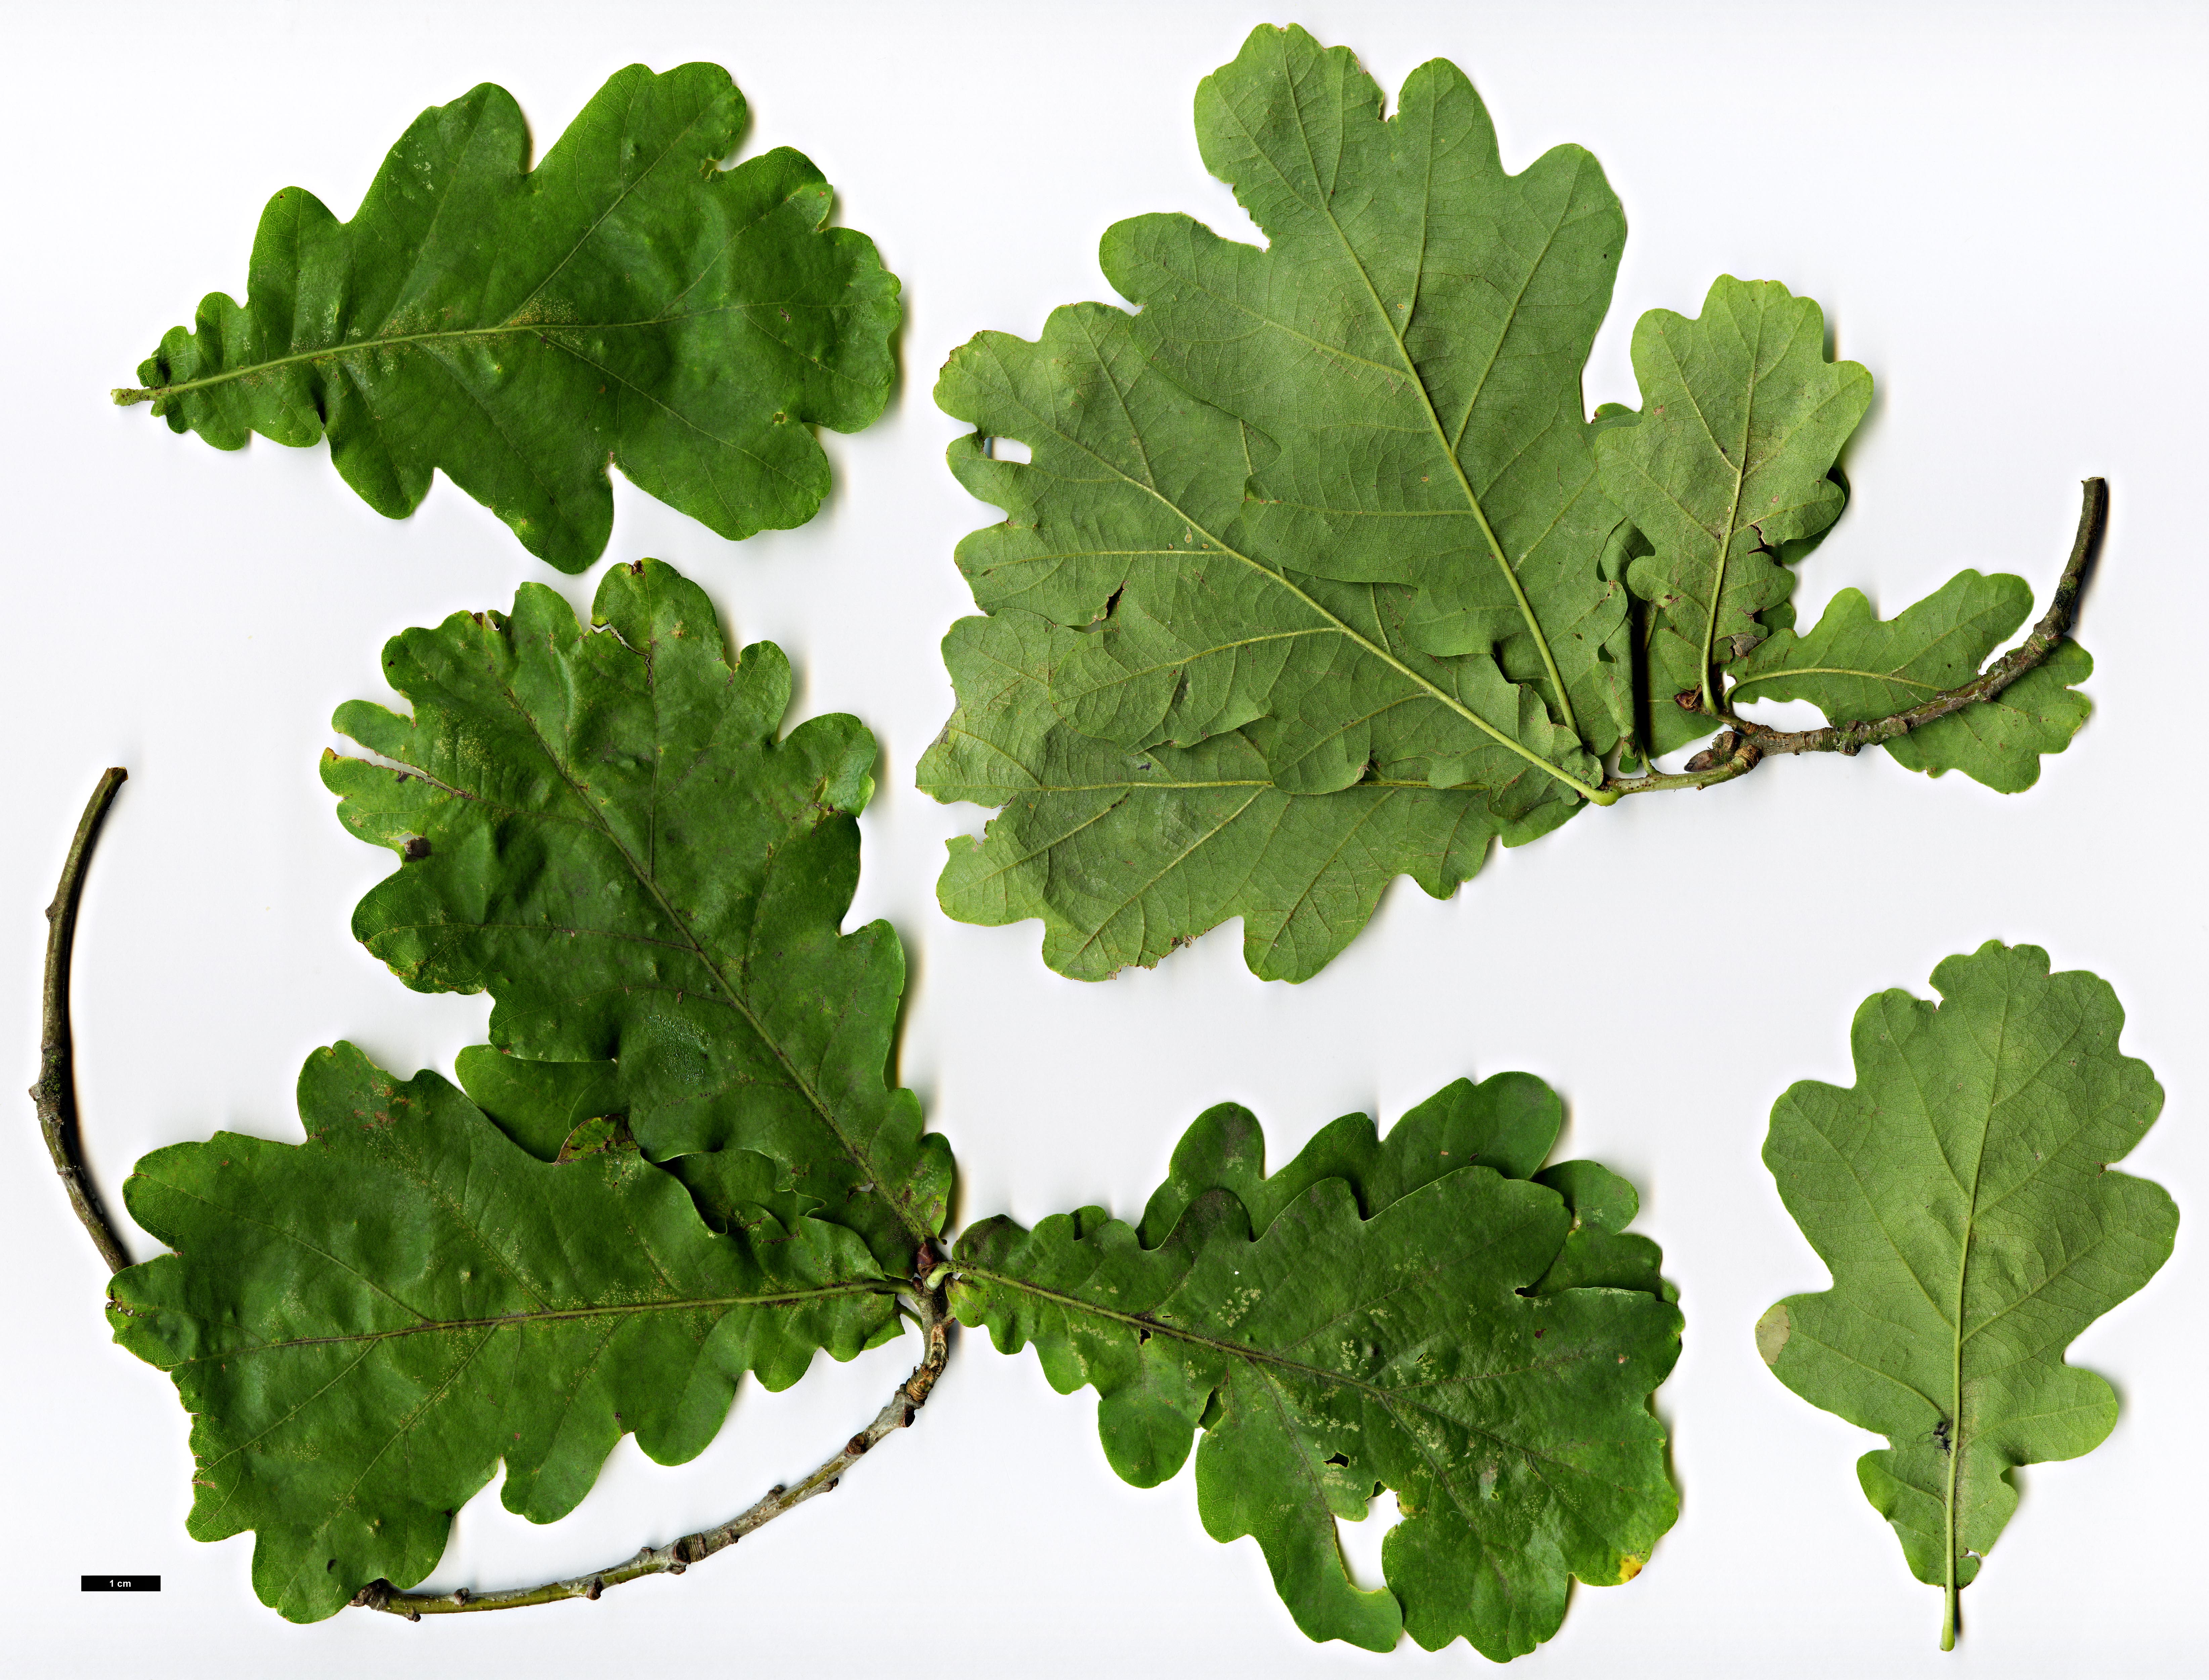 High resolution image: Family: Fagaceae - Genus: Quercus - Taxon: robur - SpeciesSub: 'Tortuosa'